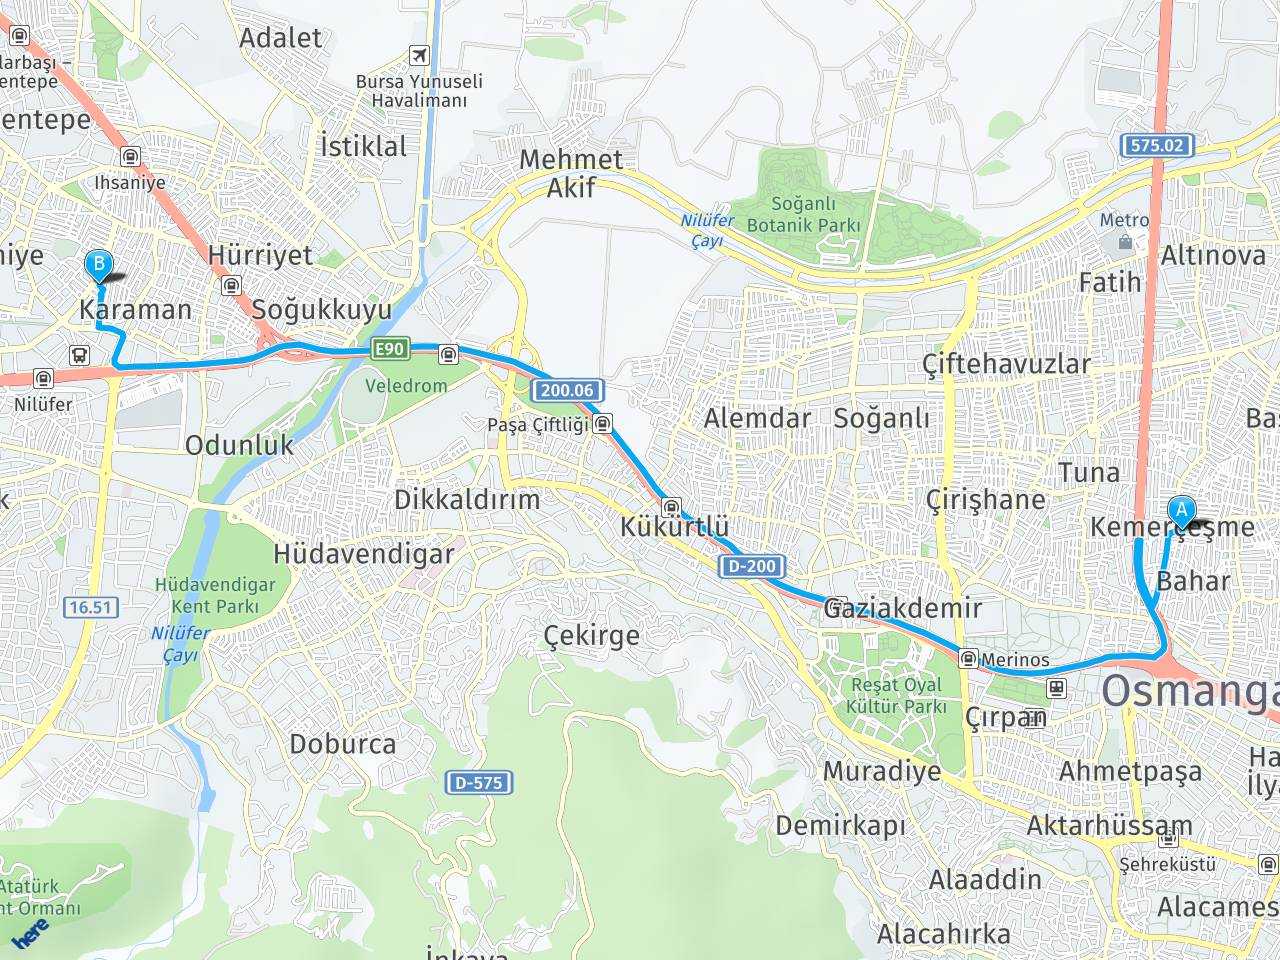 Kemerçeşme Gül Sokak Karaman Nilüfer Bursa haritası